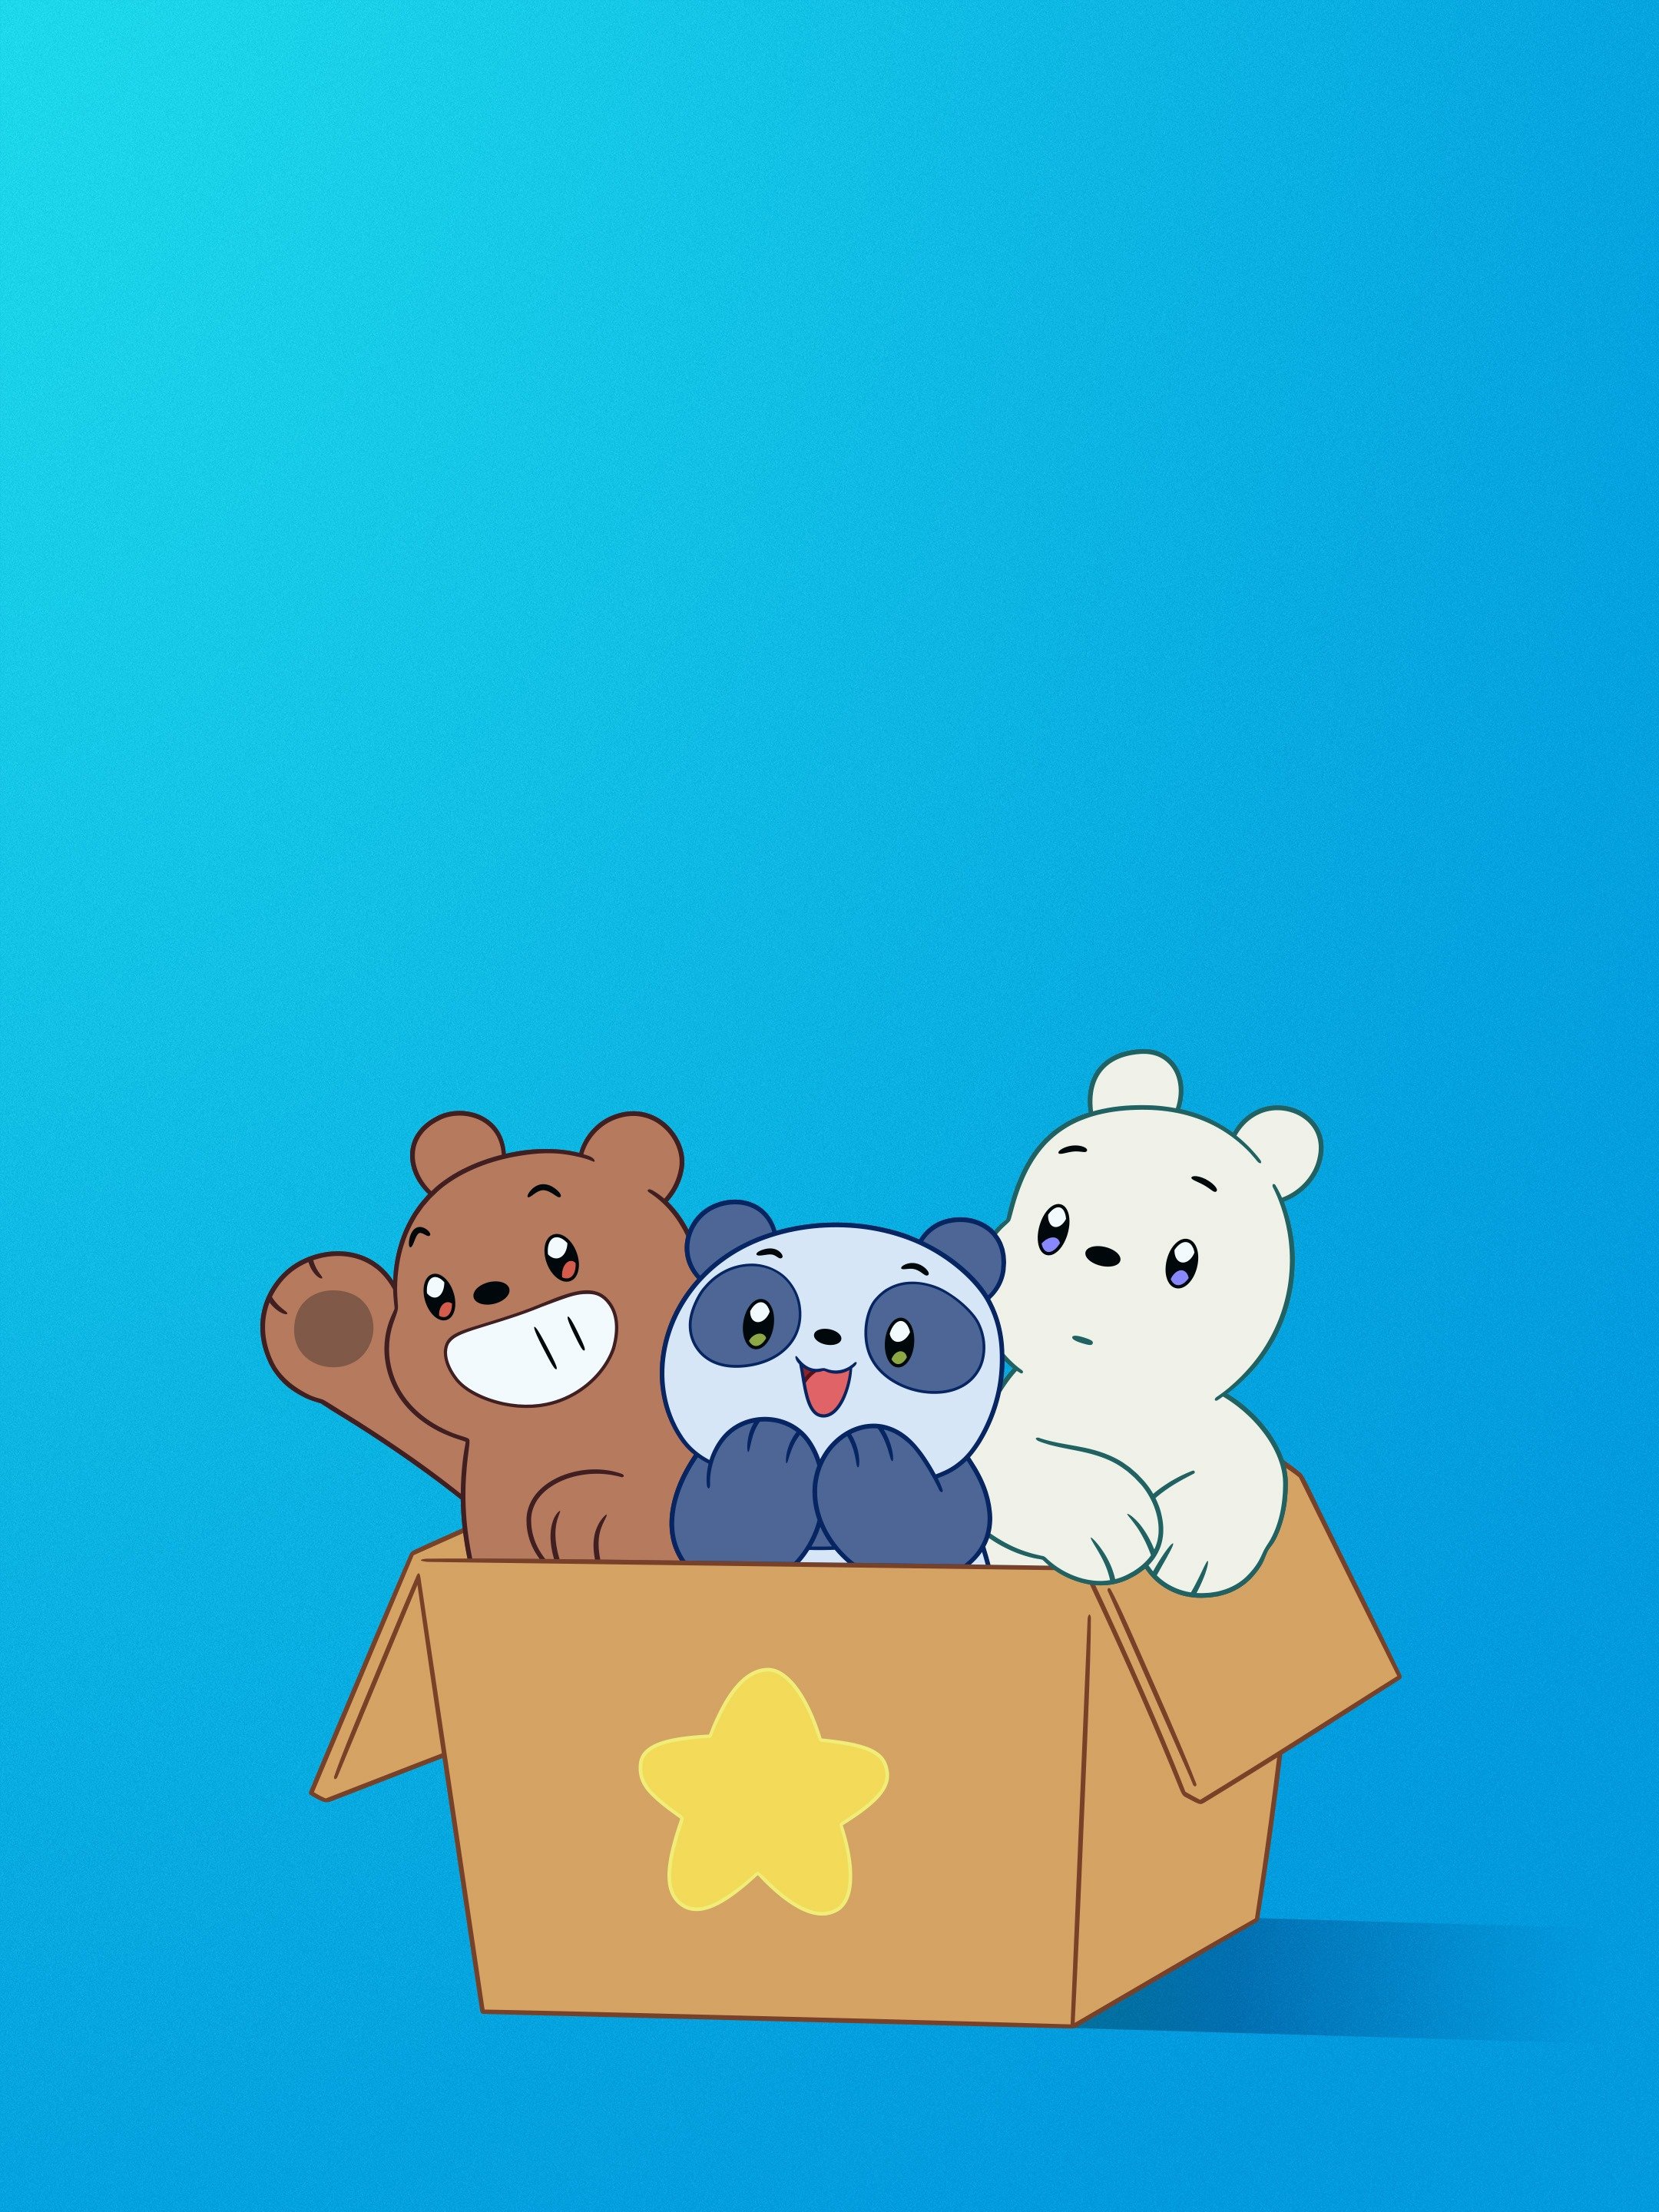 We Baby Bears là một bộ phim hoạt hình gấu đầy sáng tạo và thú vị. Hãy xem ảnh để trải nghiệm cuộc phiêu lưu tuyệt vời của những chú gấu trẻ.